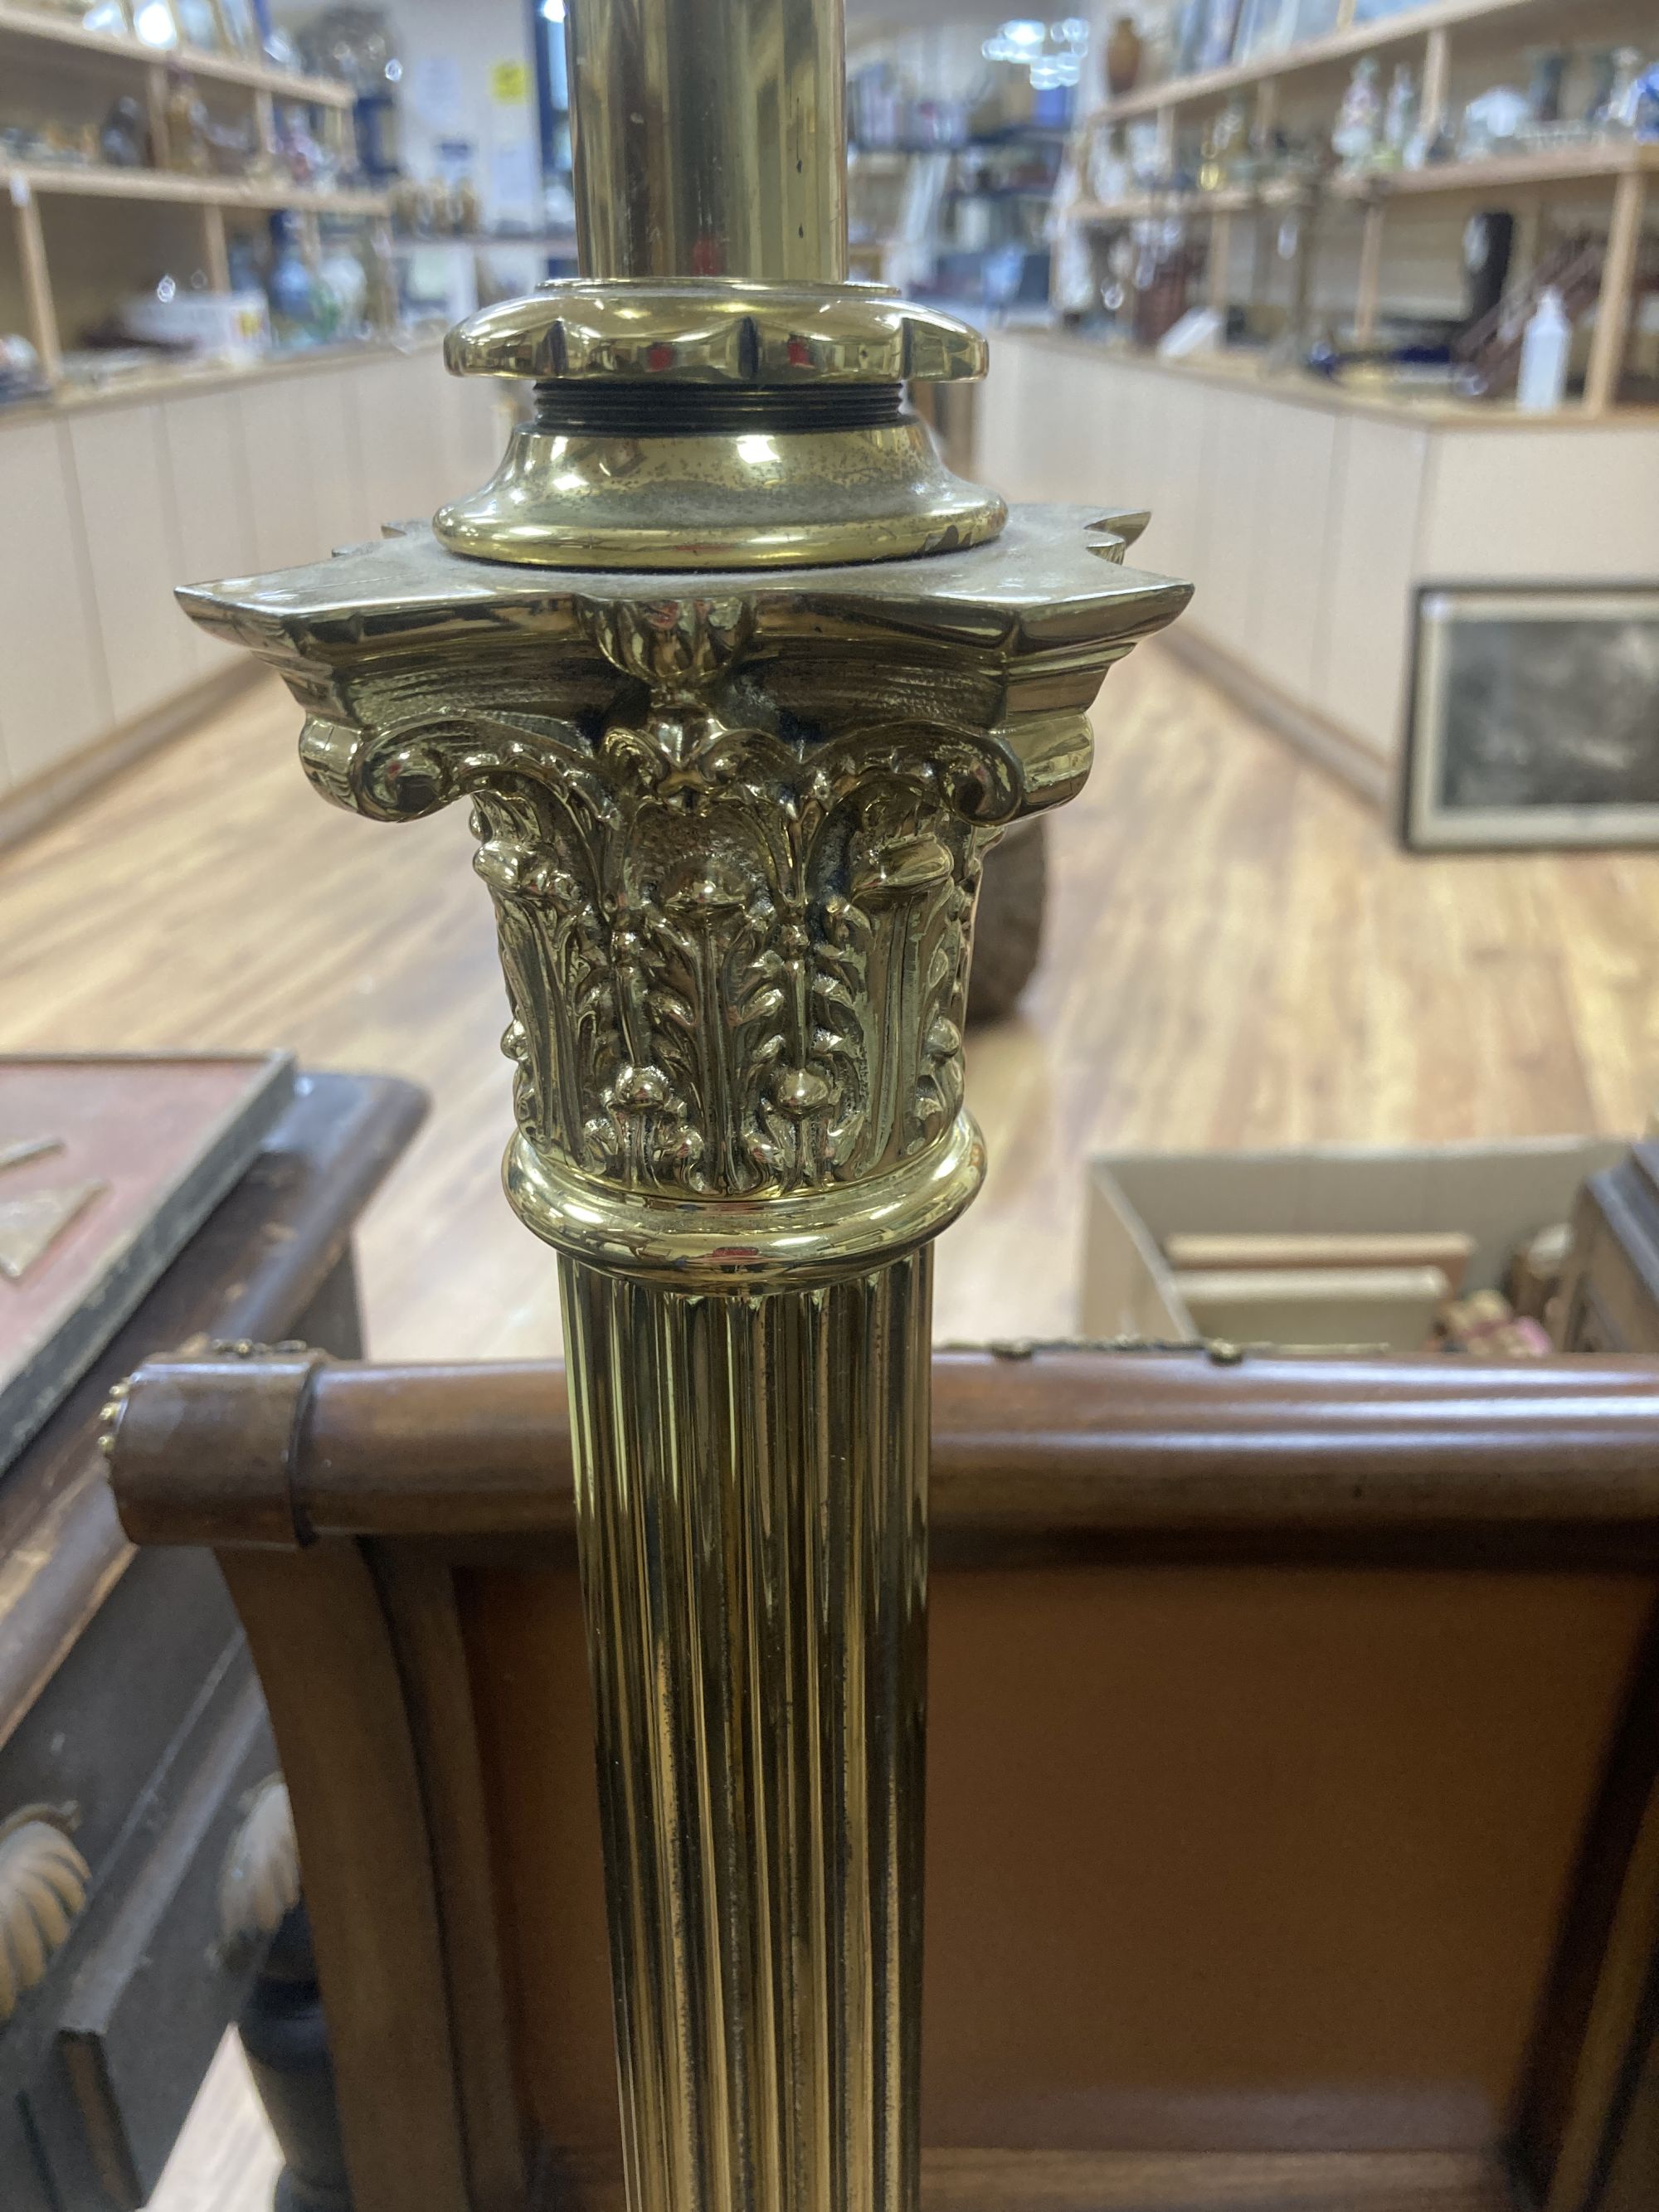 A Corinthian column brass telescopic standard lamp